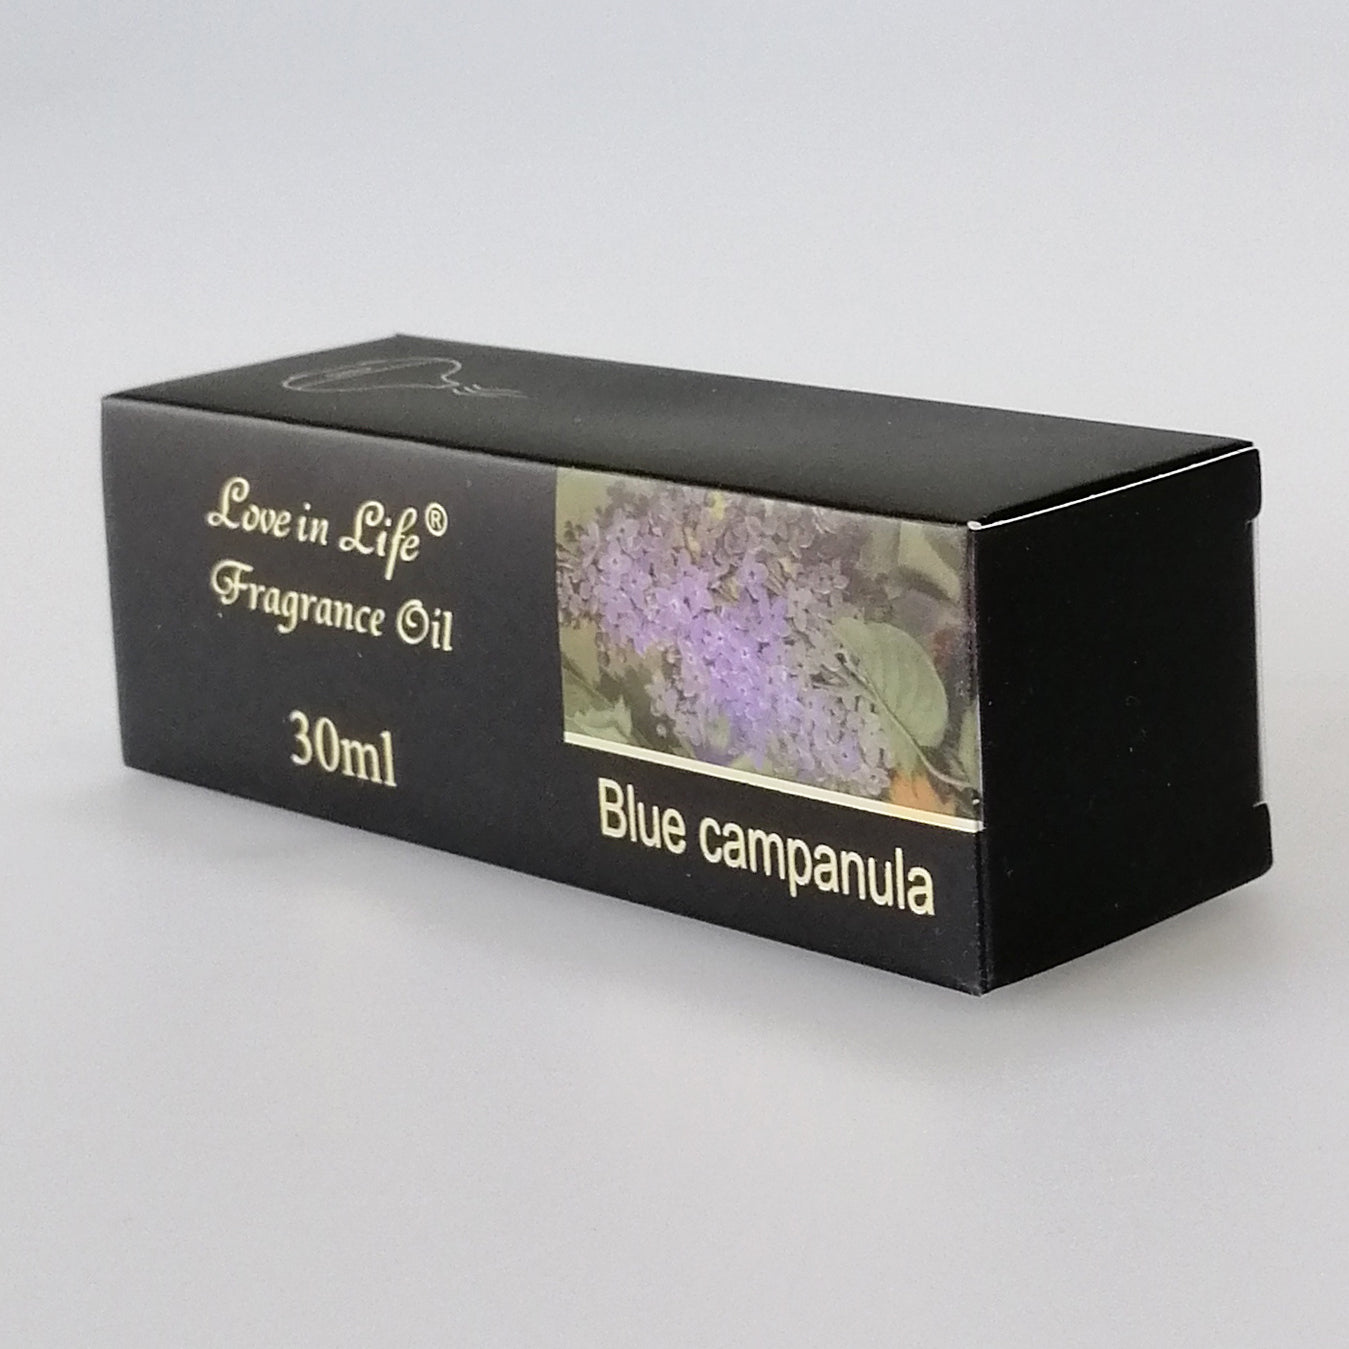 Love in Life - Fragrance Oil - Blue Campanula - 30ml